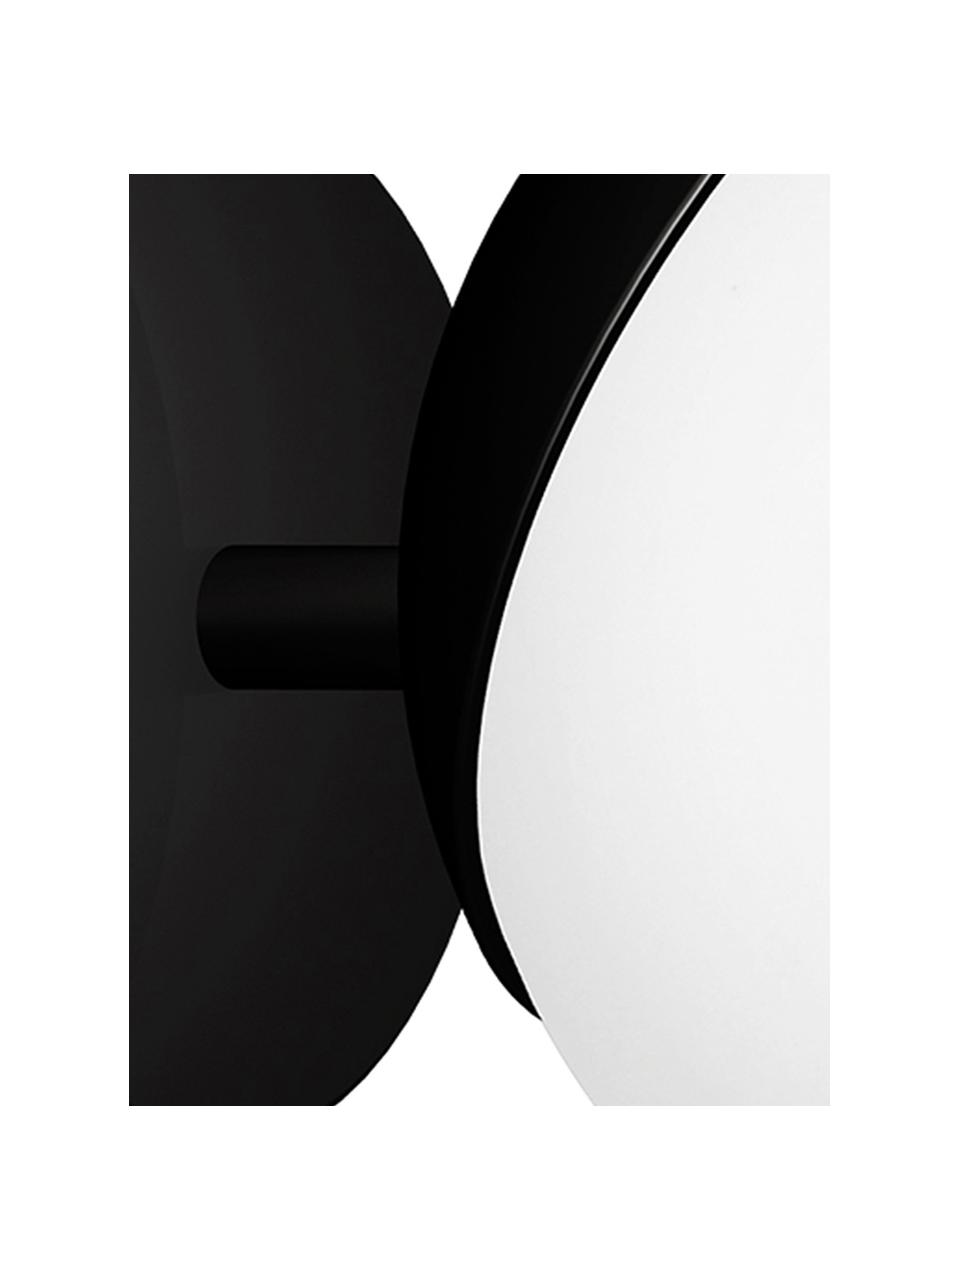 Kinkiet Sfera, Czarny, biały, opalowy, S 15 x W 15 cm